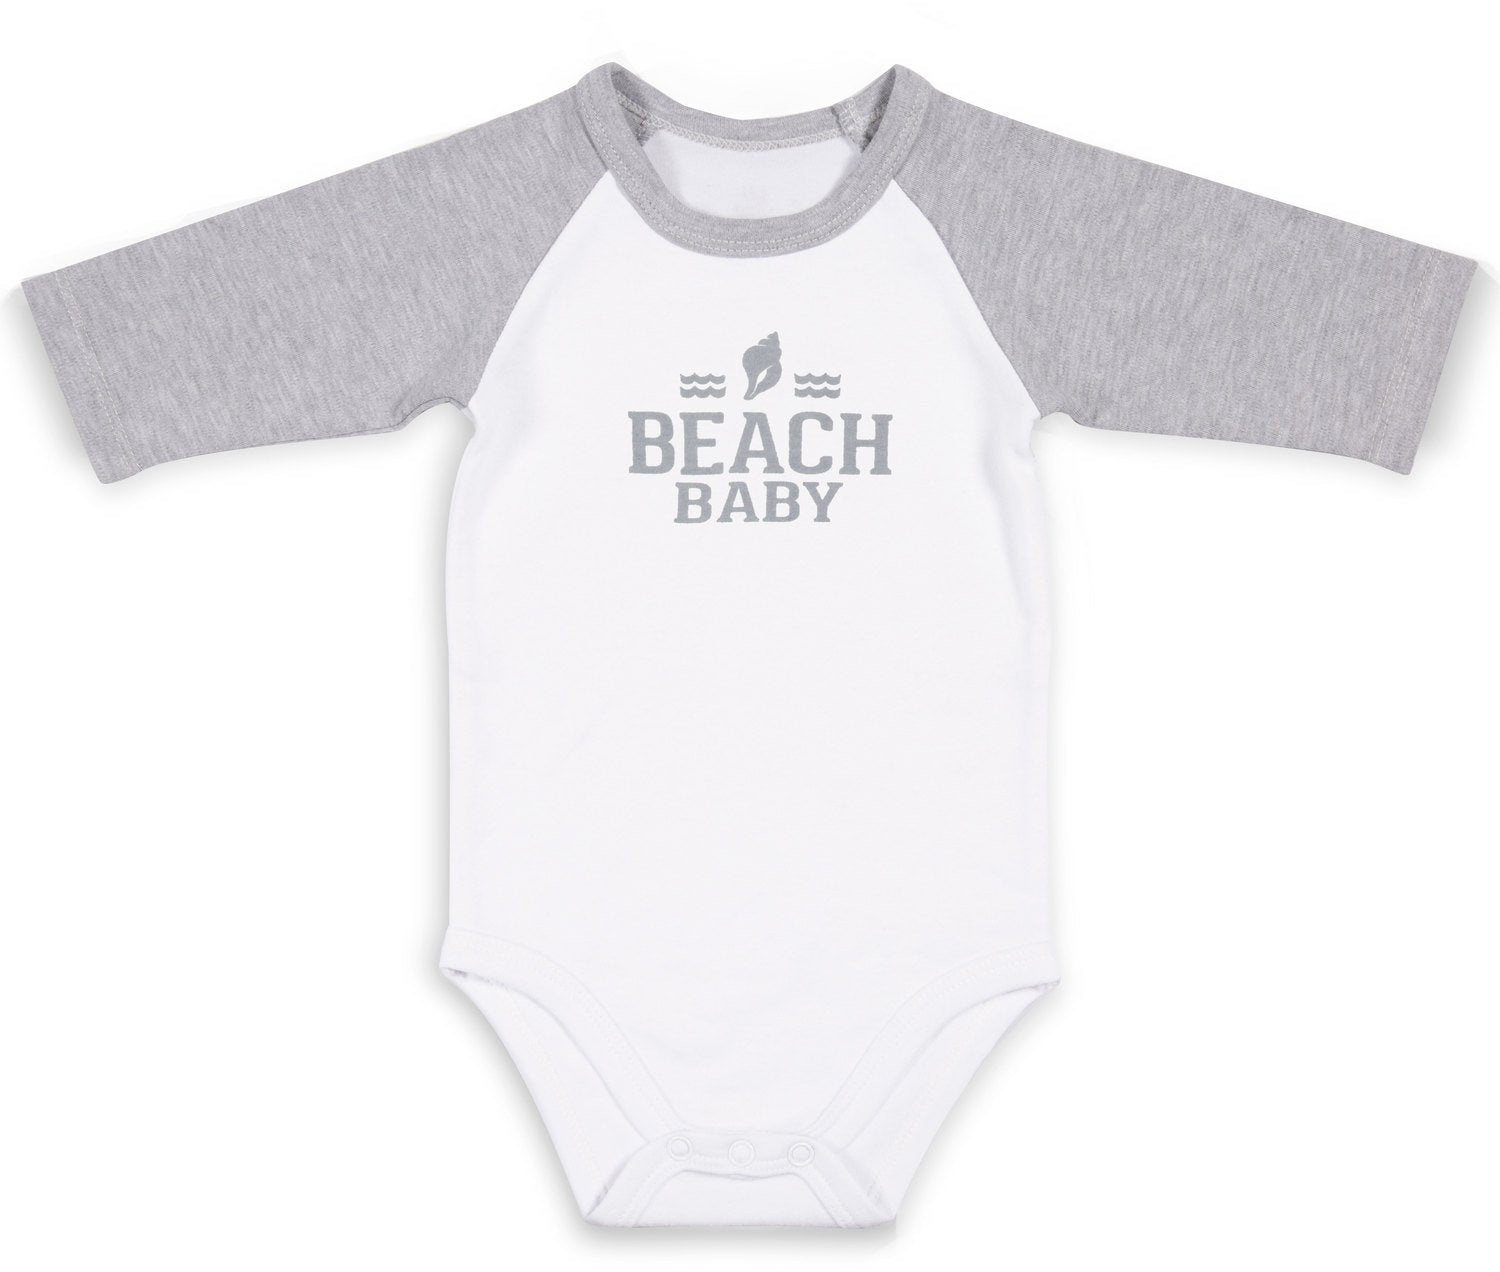 Gray & White Beach Baby 3/4 Sleeve Baby Onesie Baby Onesie We Baby - GigglesGear.com